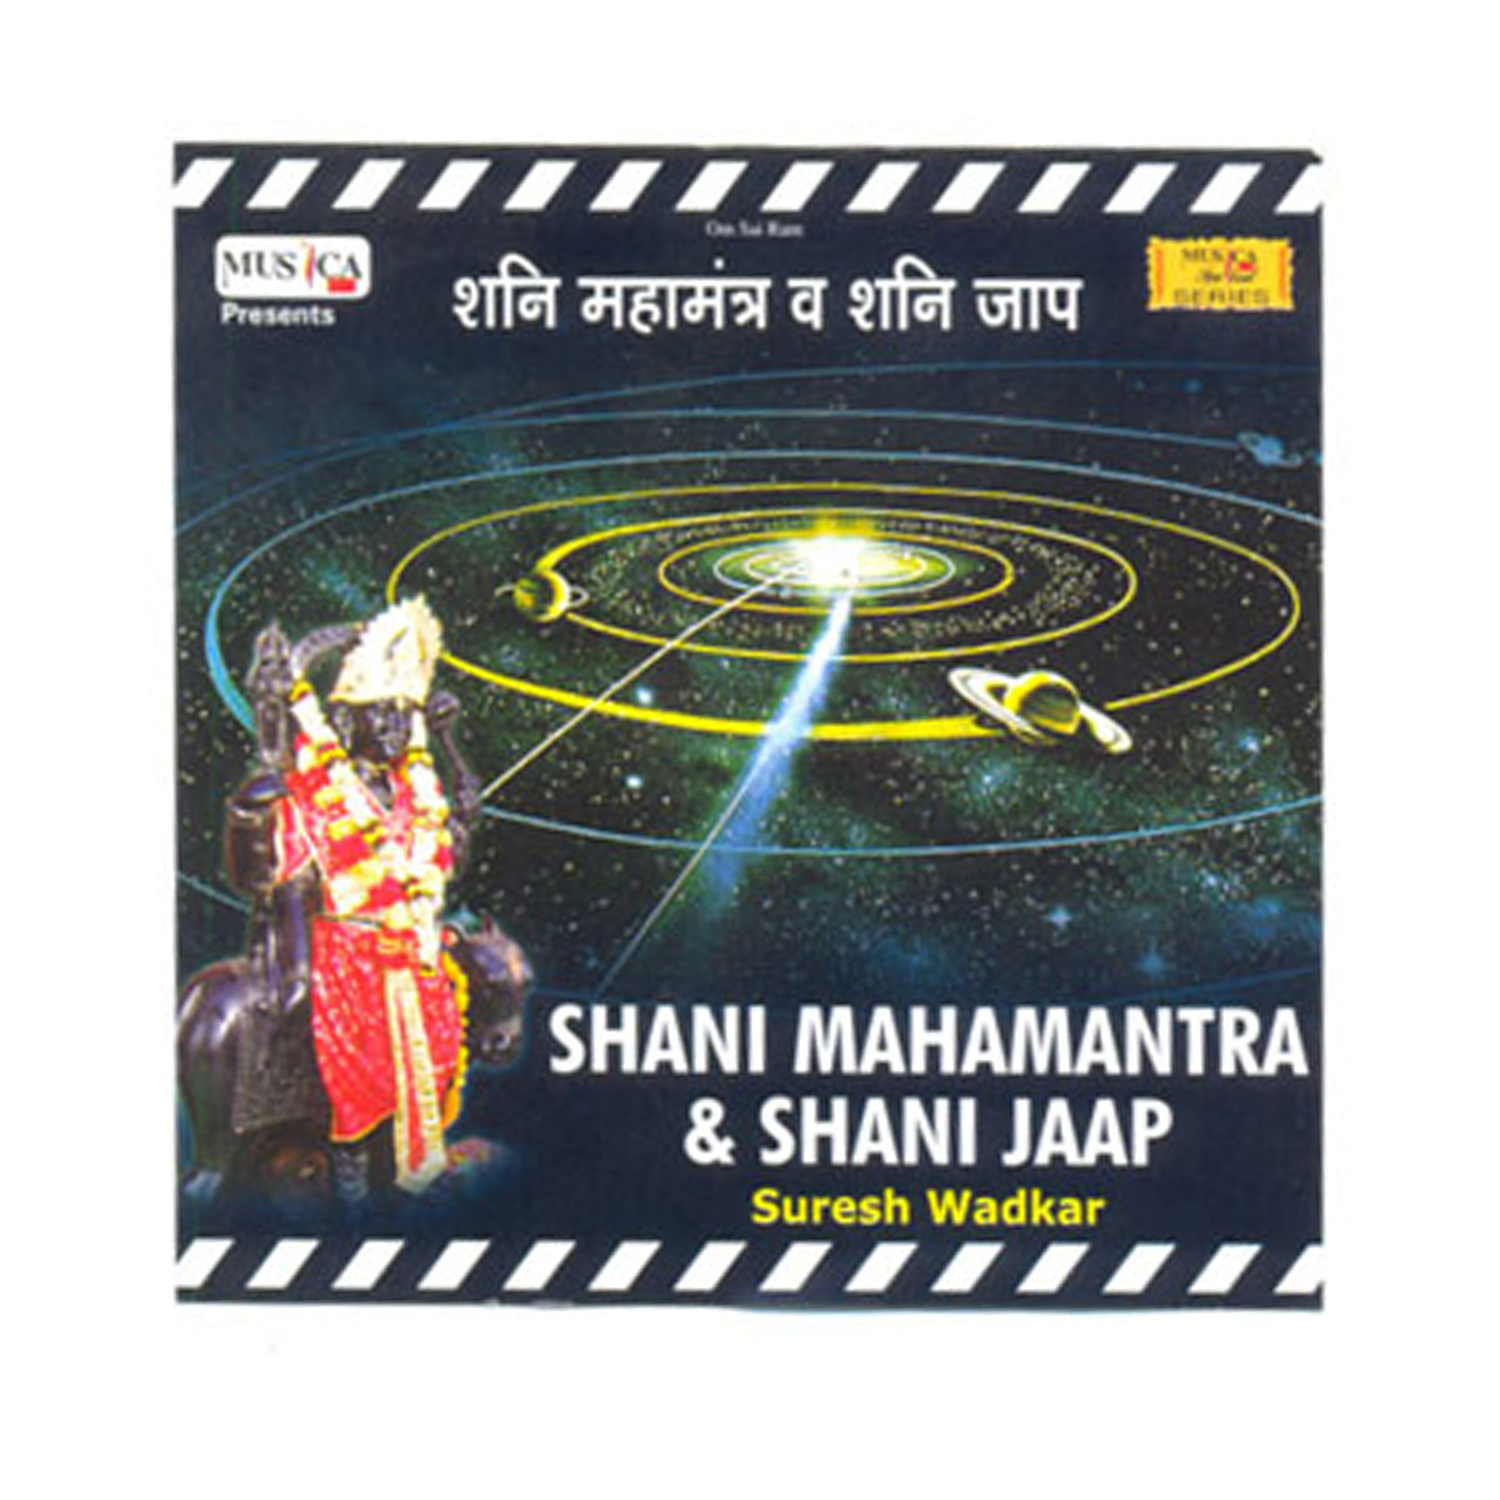 Shani Mahamantra & Shani Jaap